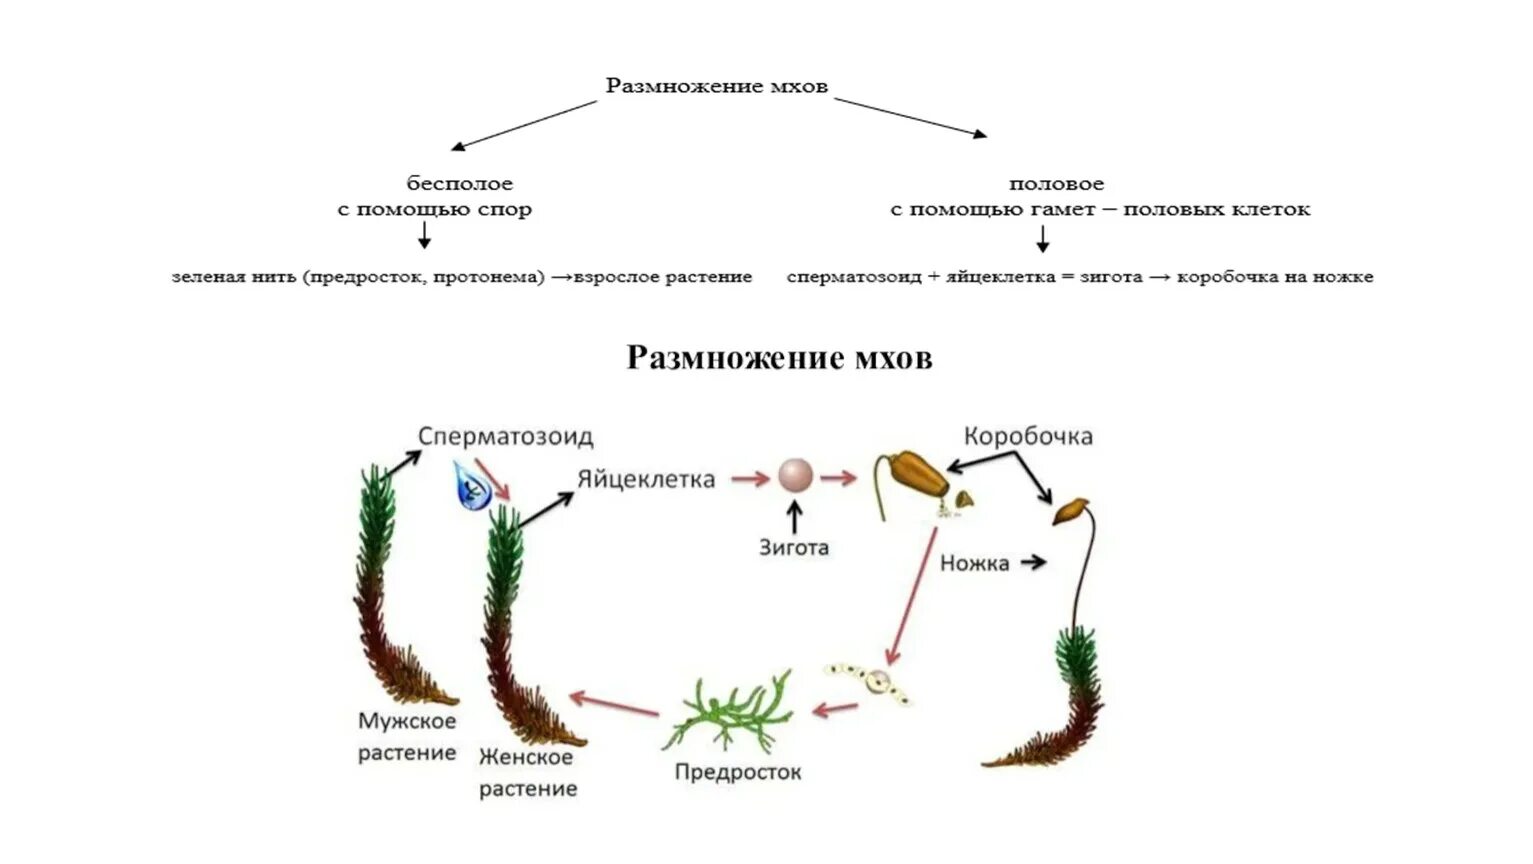 Размножение мха сфагнума схема. Схема размножения споровых растений. Цикл развития споровых растений. Споровое размножение сфагнума.